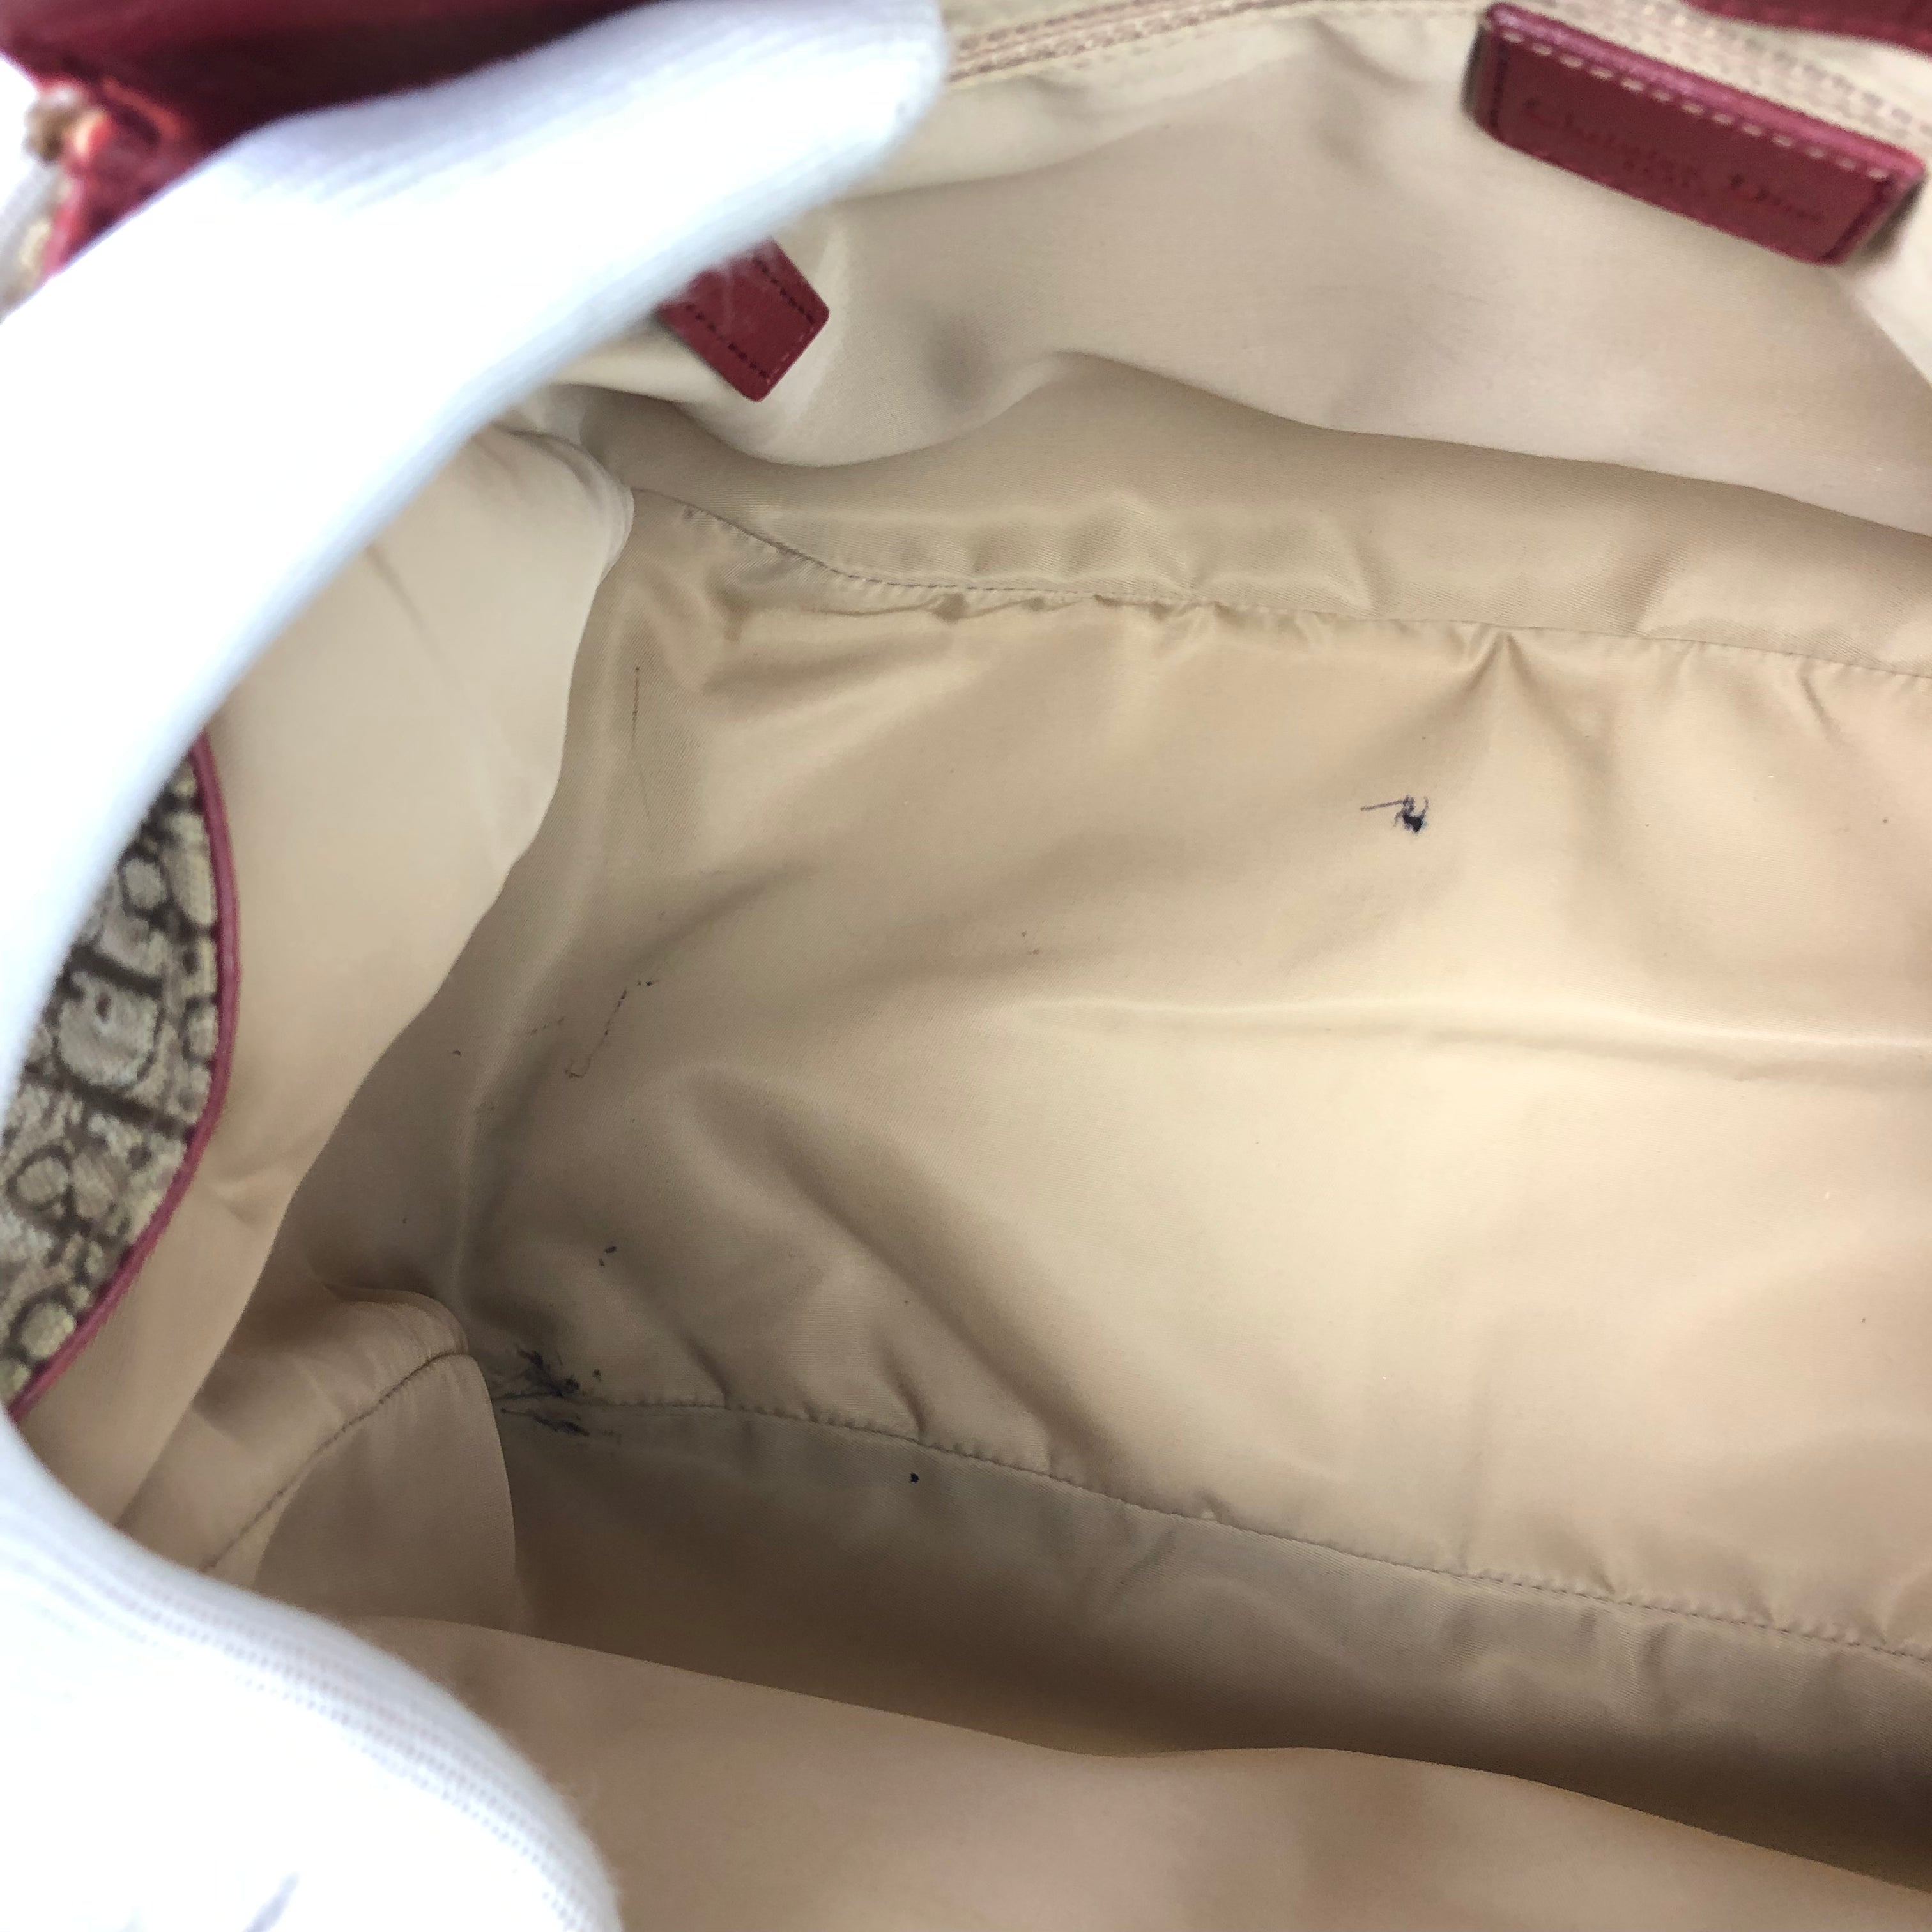 Christian Dior Shoulder Bag